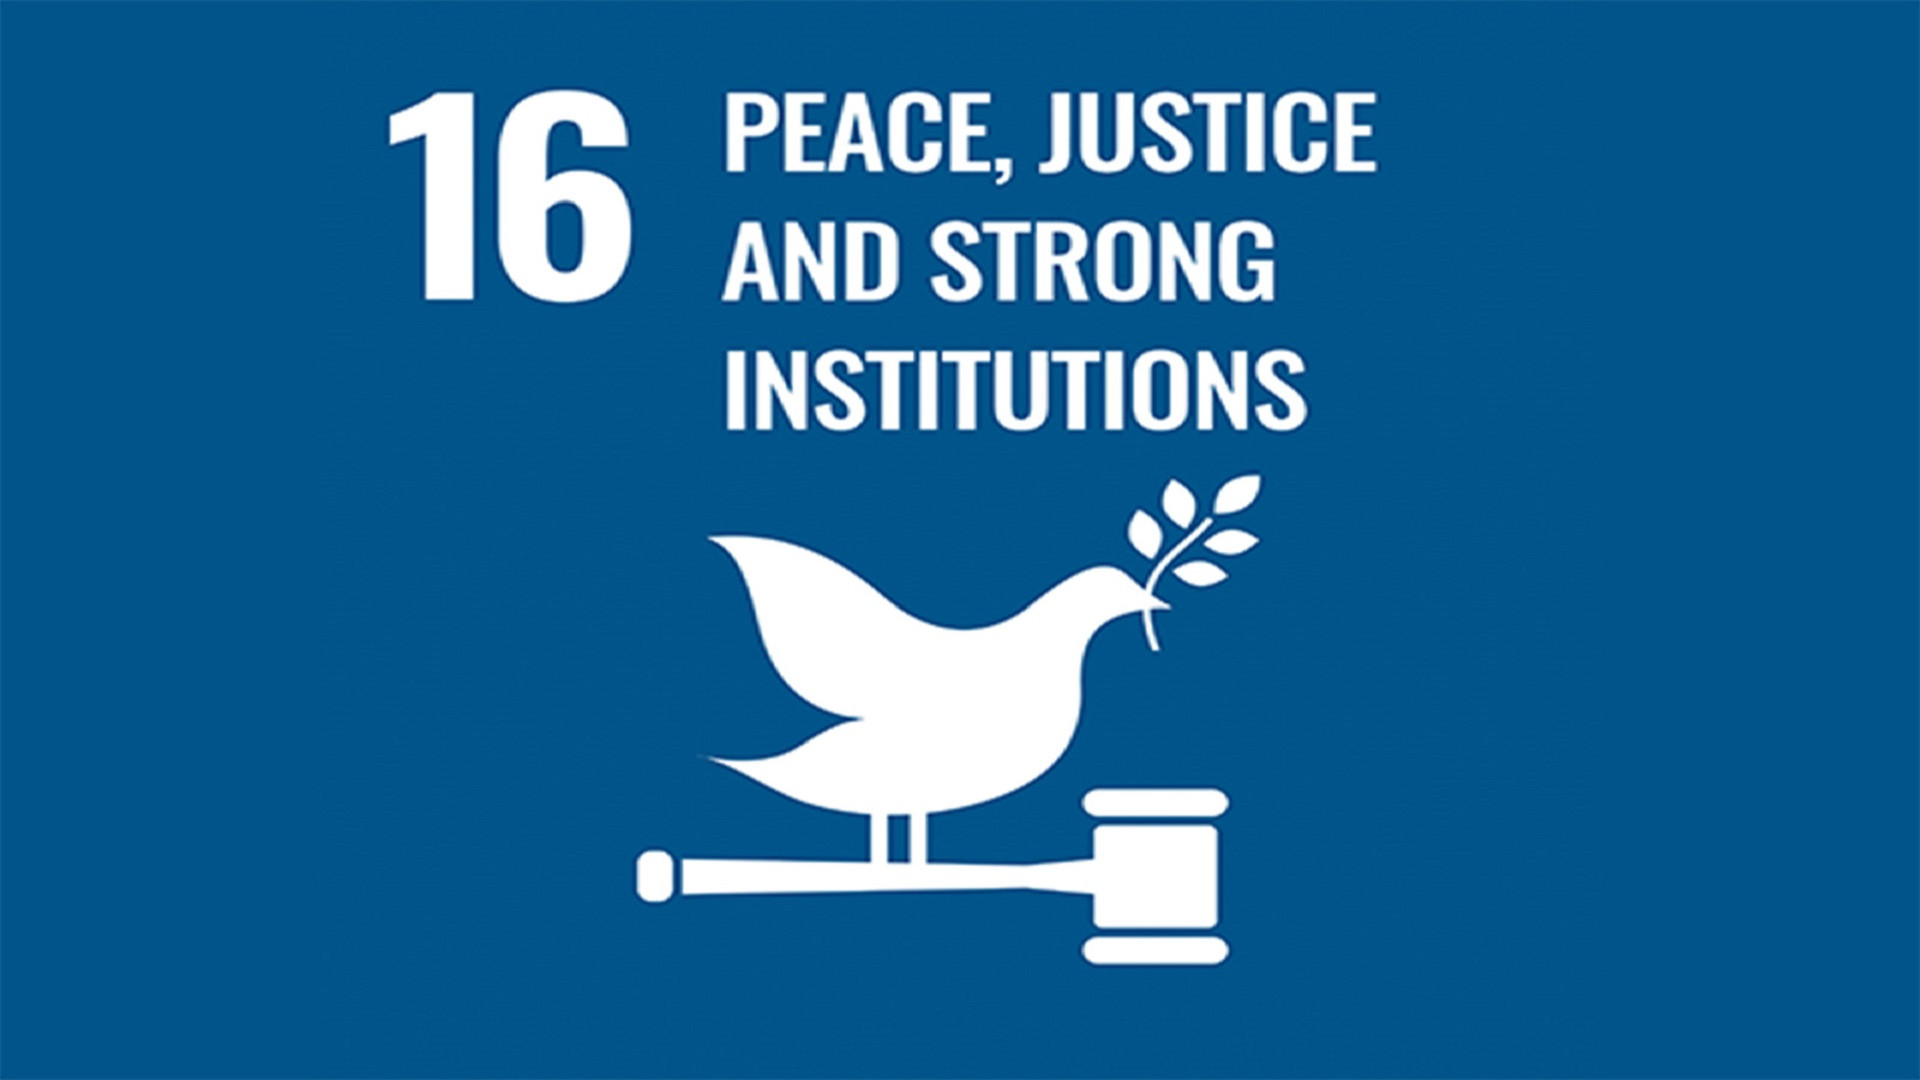 聯合國永續發展目標 16: 制度的正義與和平